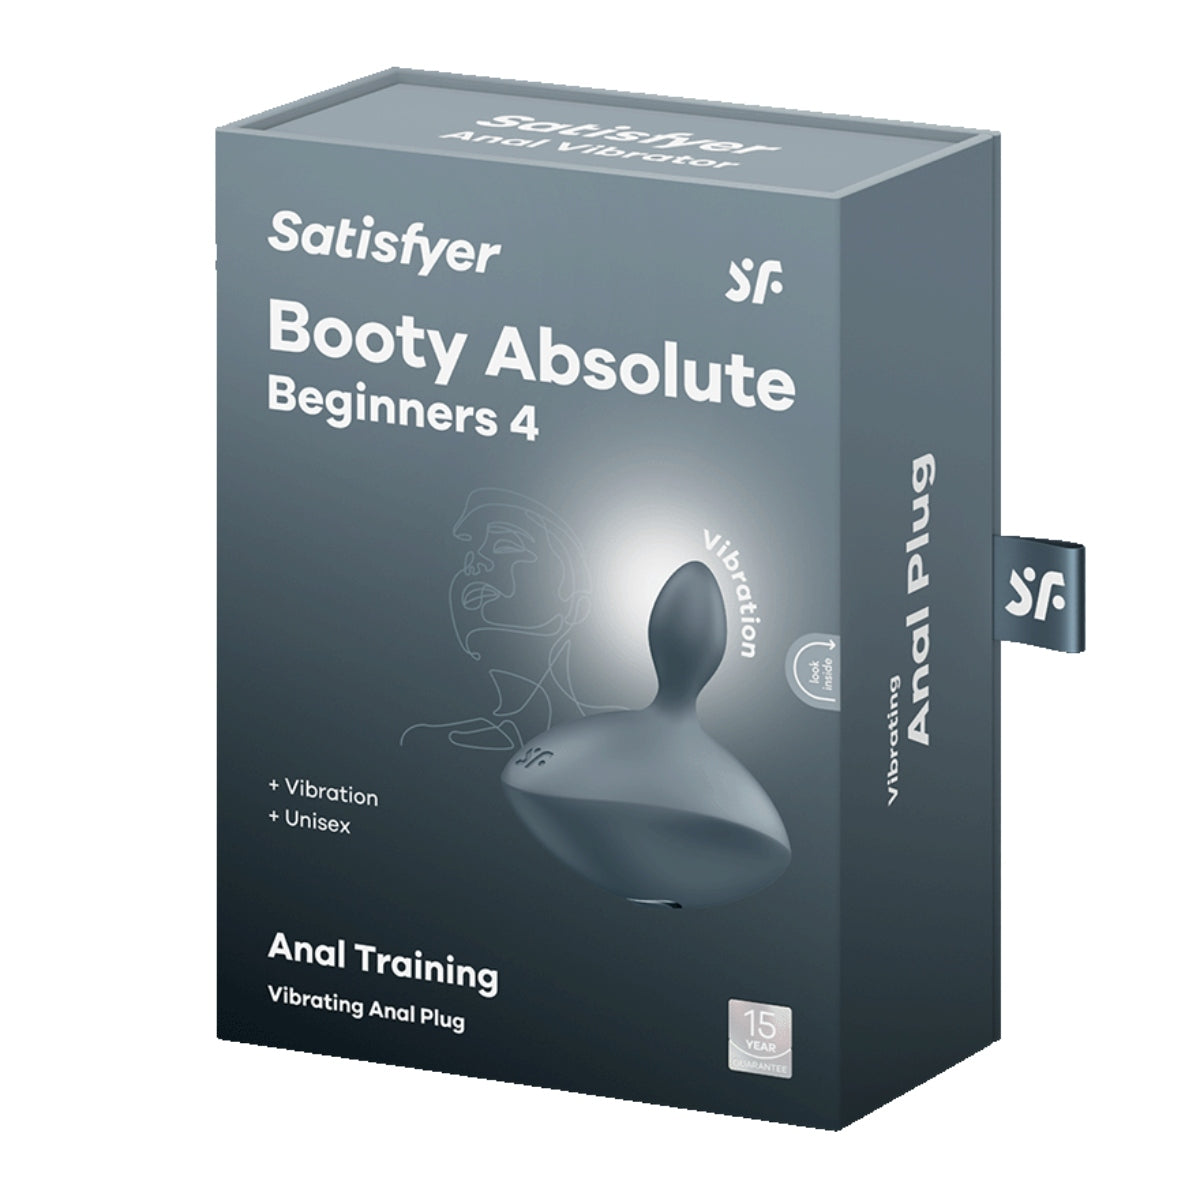 Booty Absolute Beginners 4 | Satisfyer